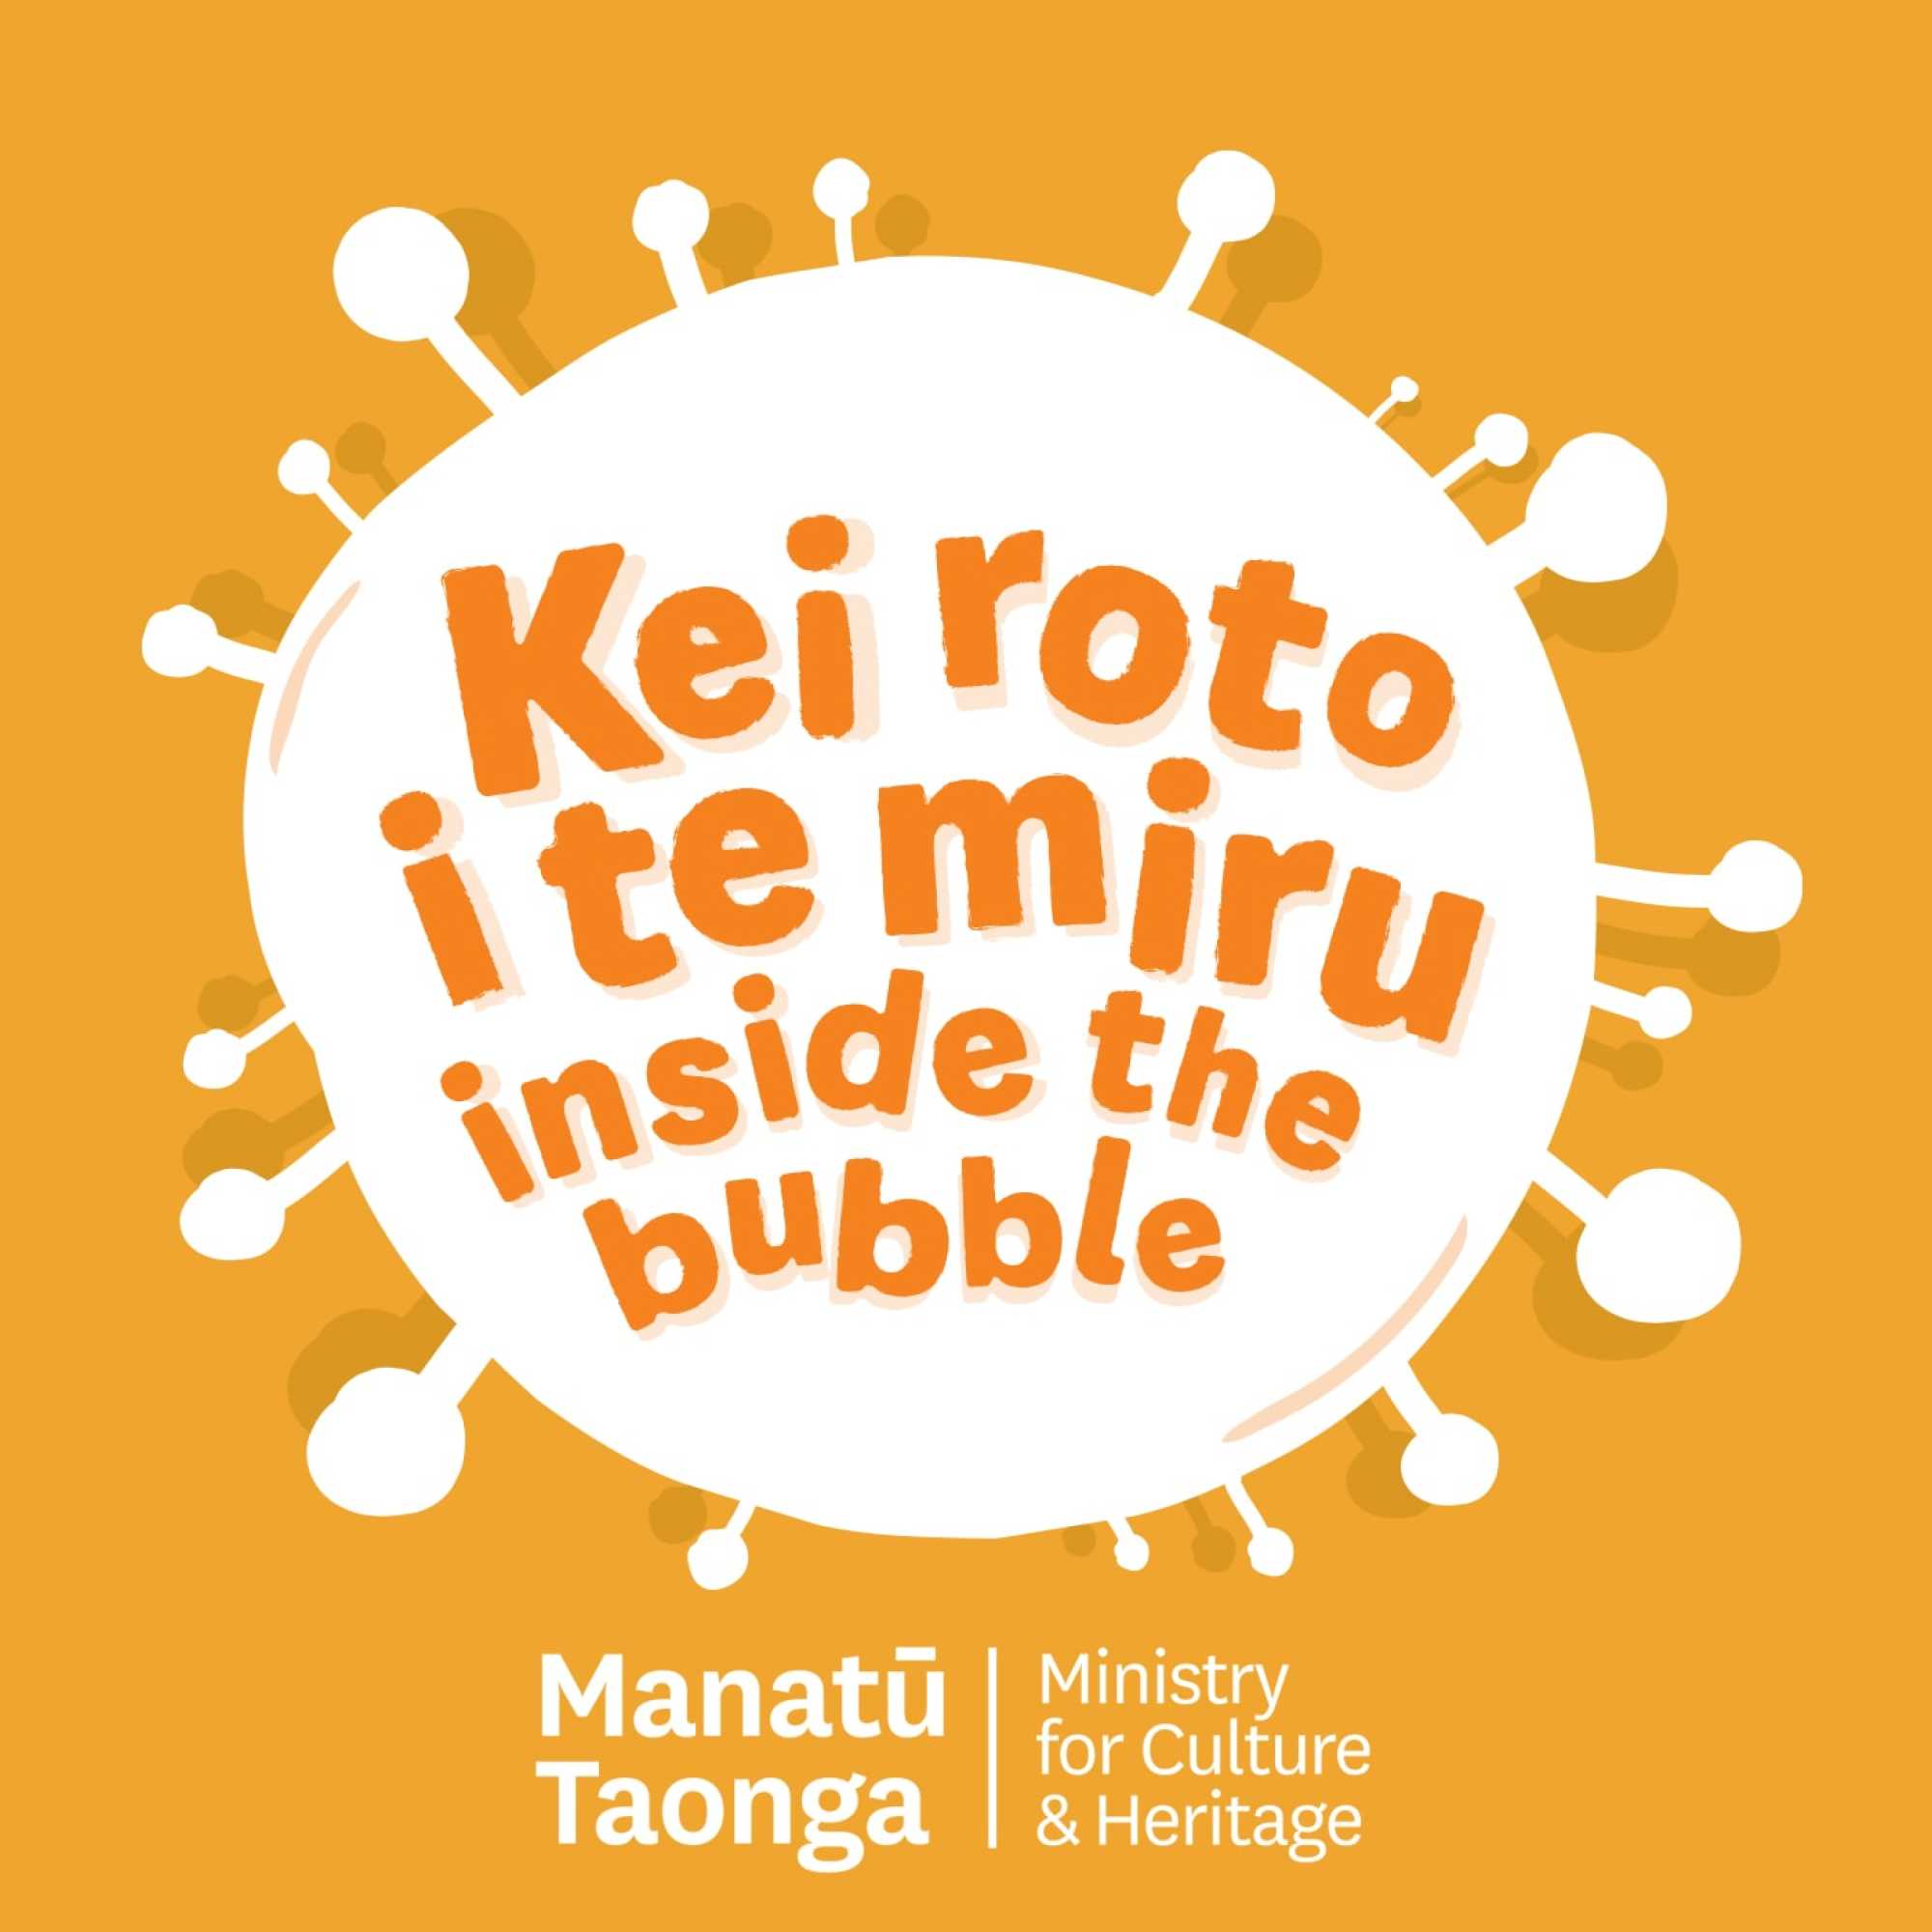 Kei Roto i te Miru: Inside the Bubble